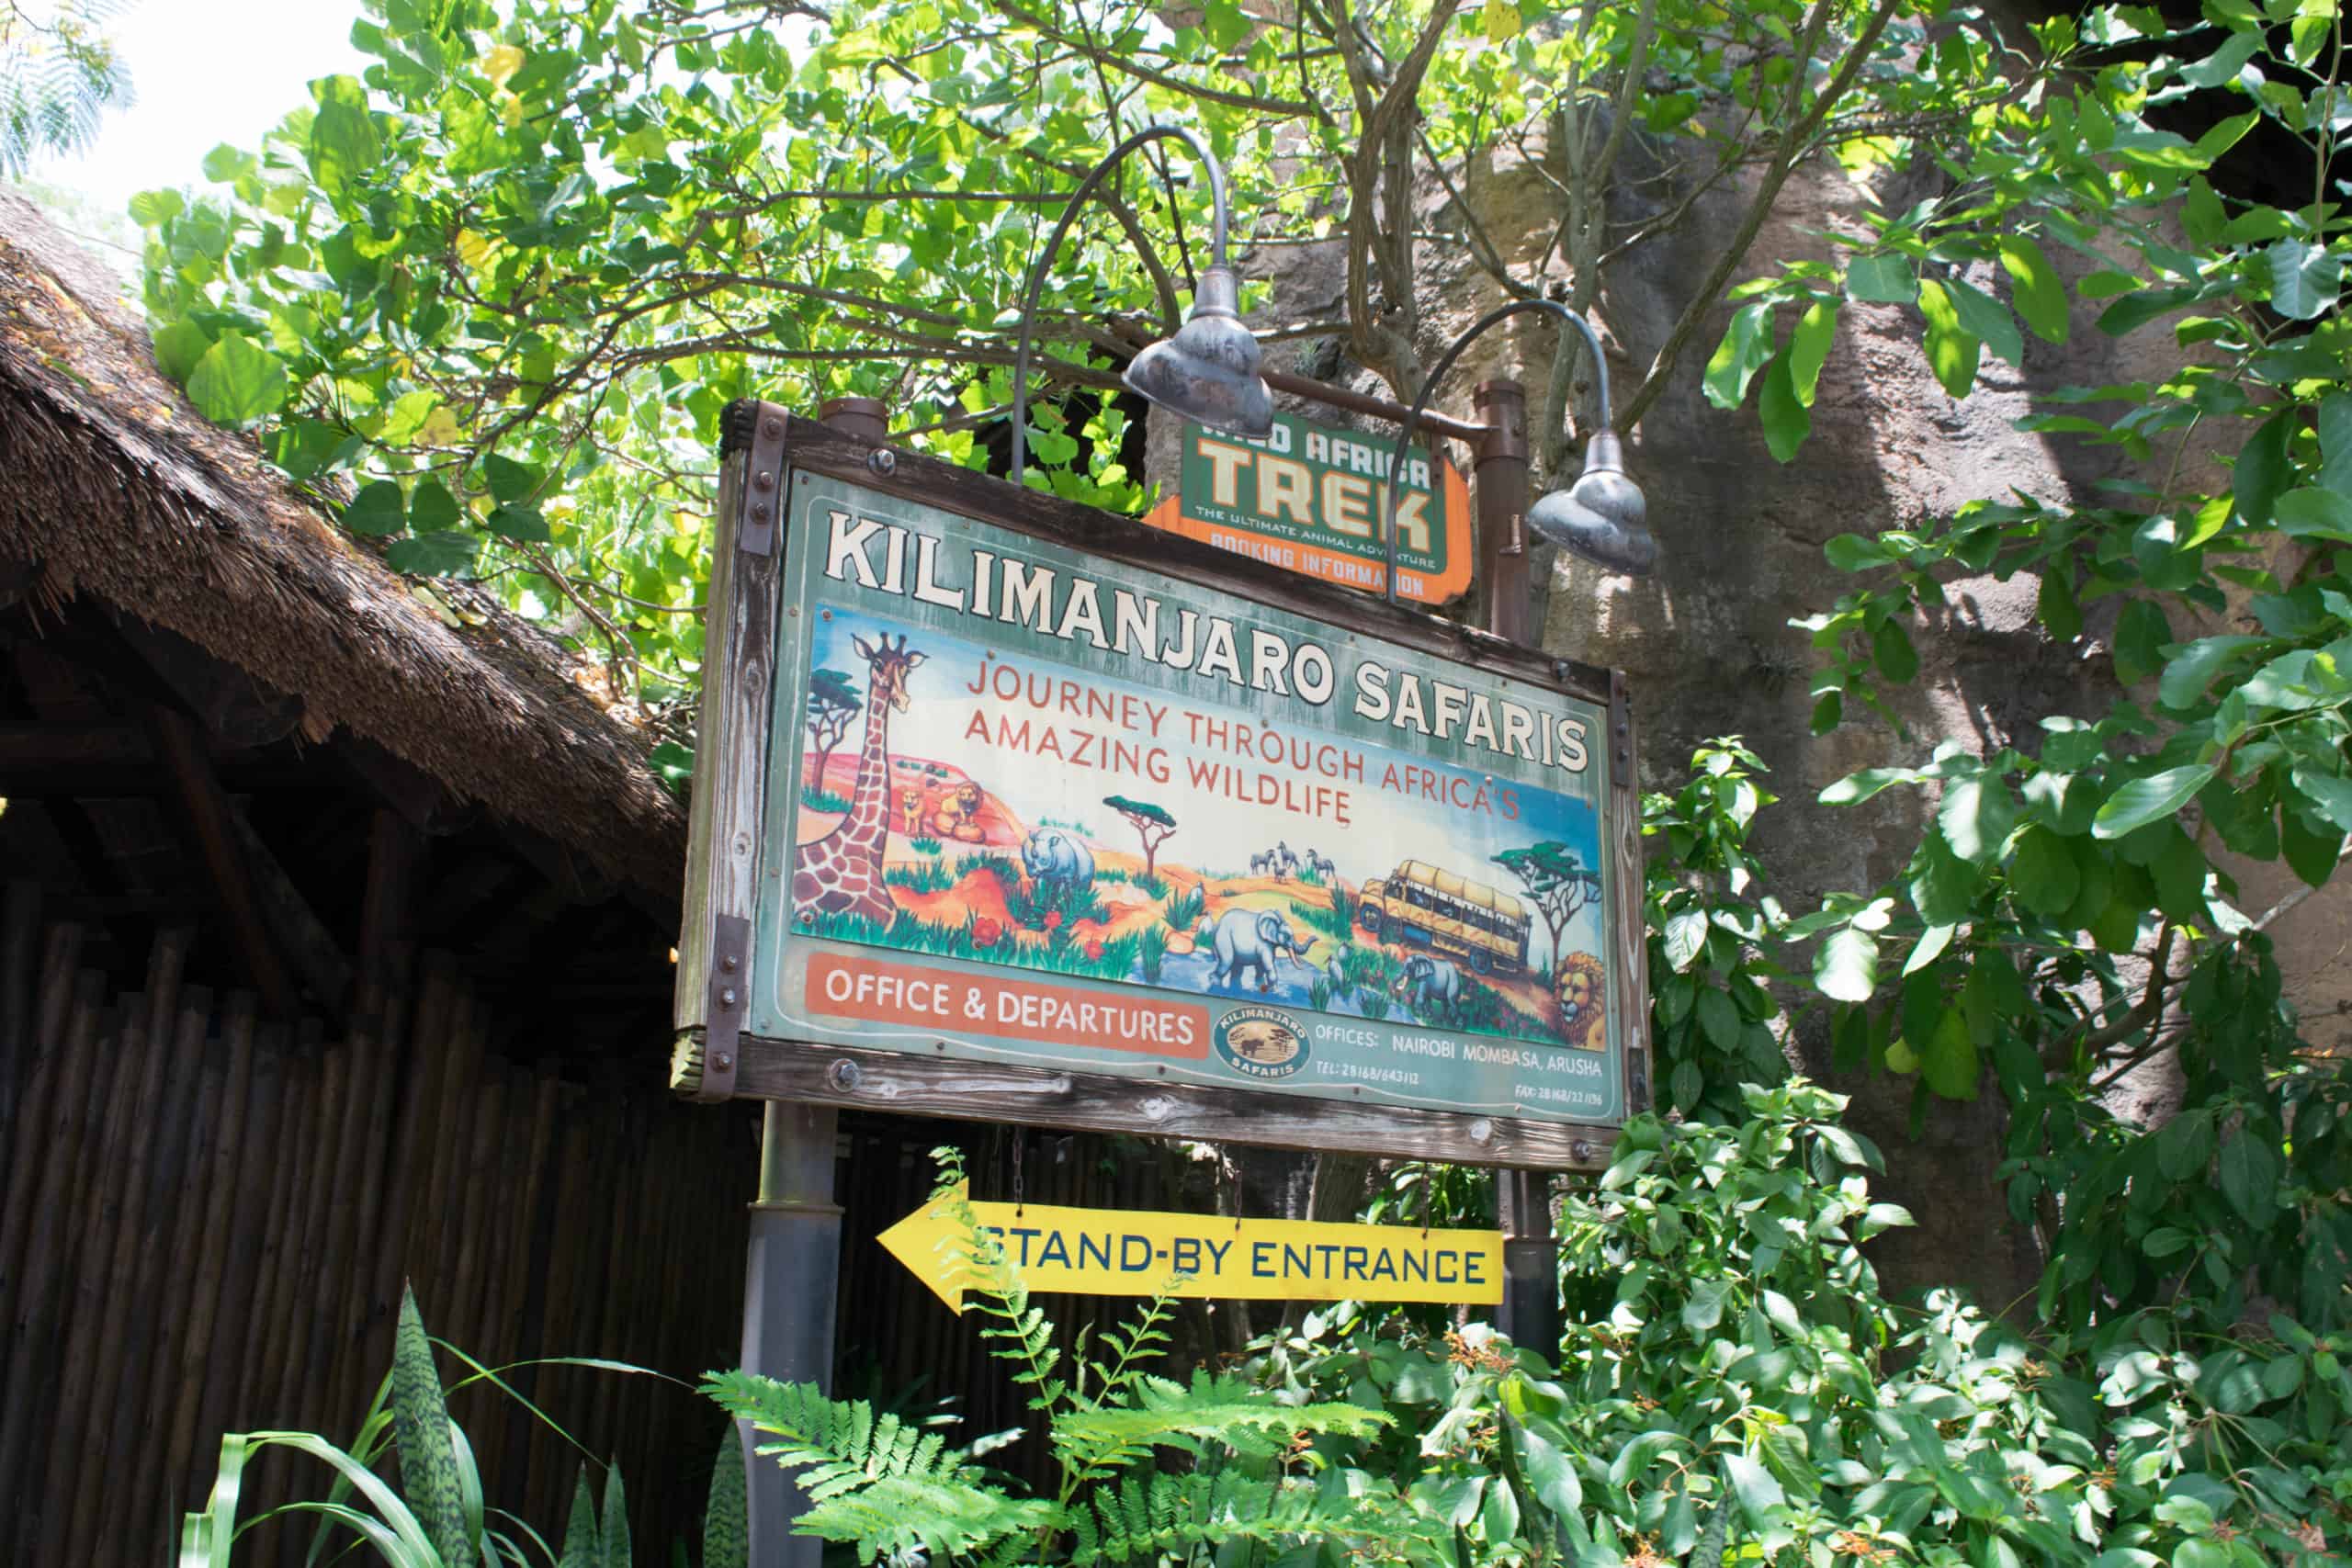 Take a wild ride on Kilimanjaro Safaris